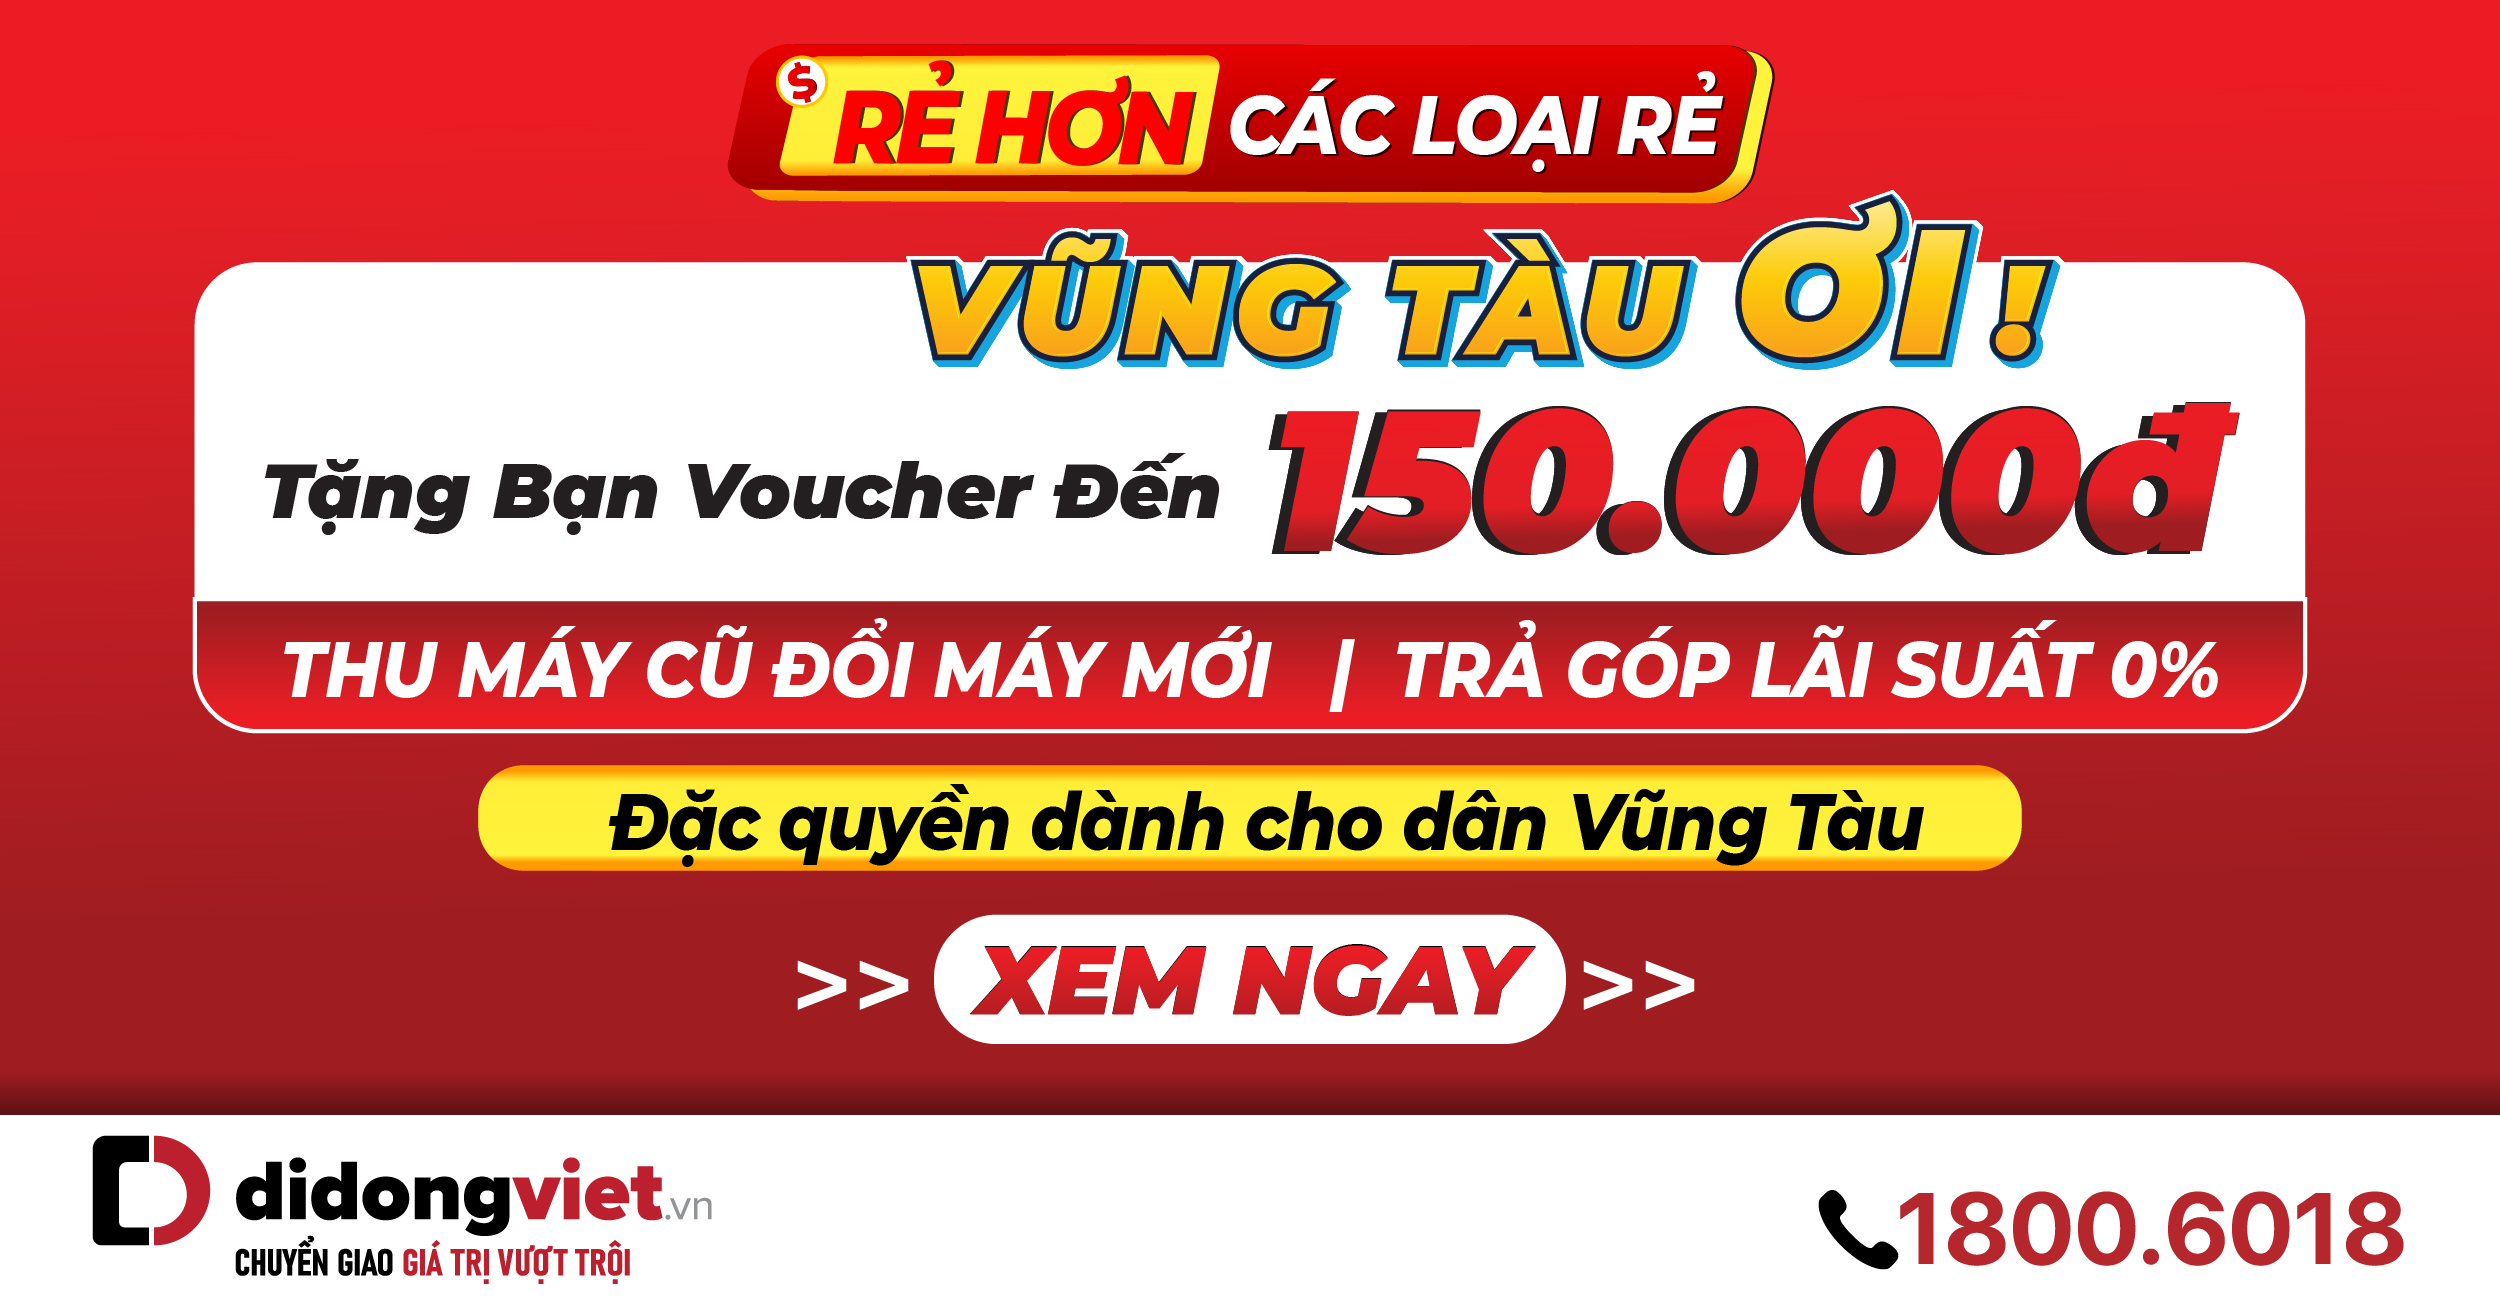 Vũng Tàu Ơi! Tặng voucher giảm thêm đến 150.000đ khi mua sắm tại cửa hàng Di Động Việt 286 Trương Công Định, TP. Vũng Tàu